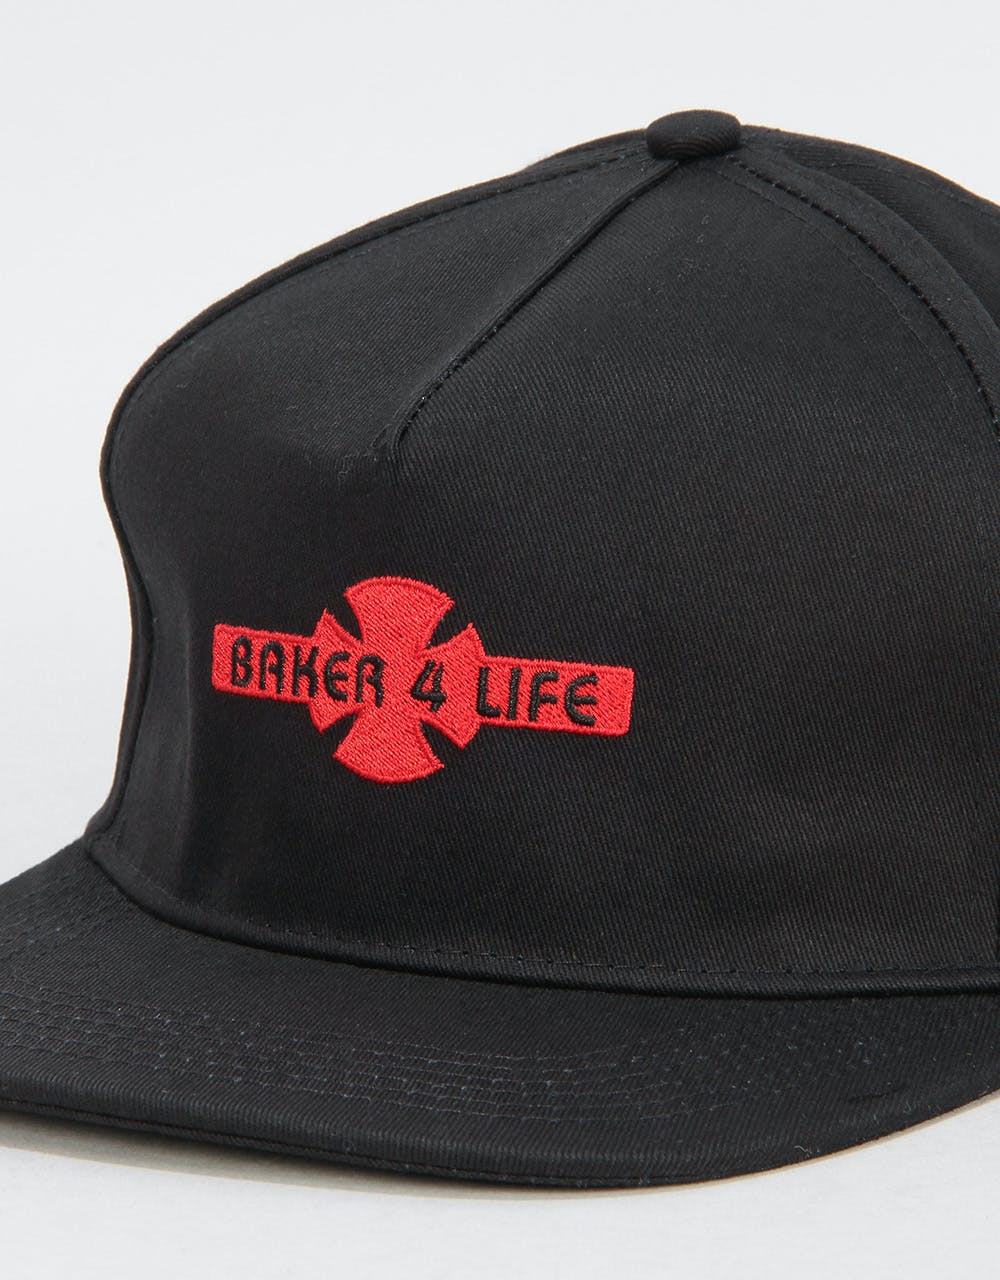 Independent x Baker 4 Life Strapback Cap - Black